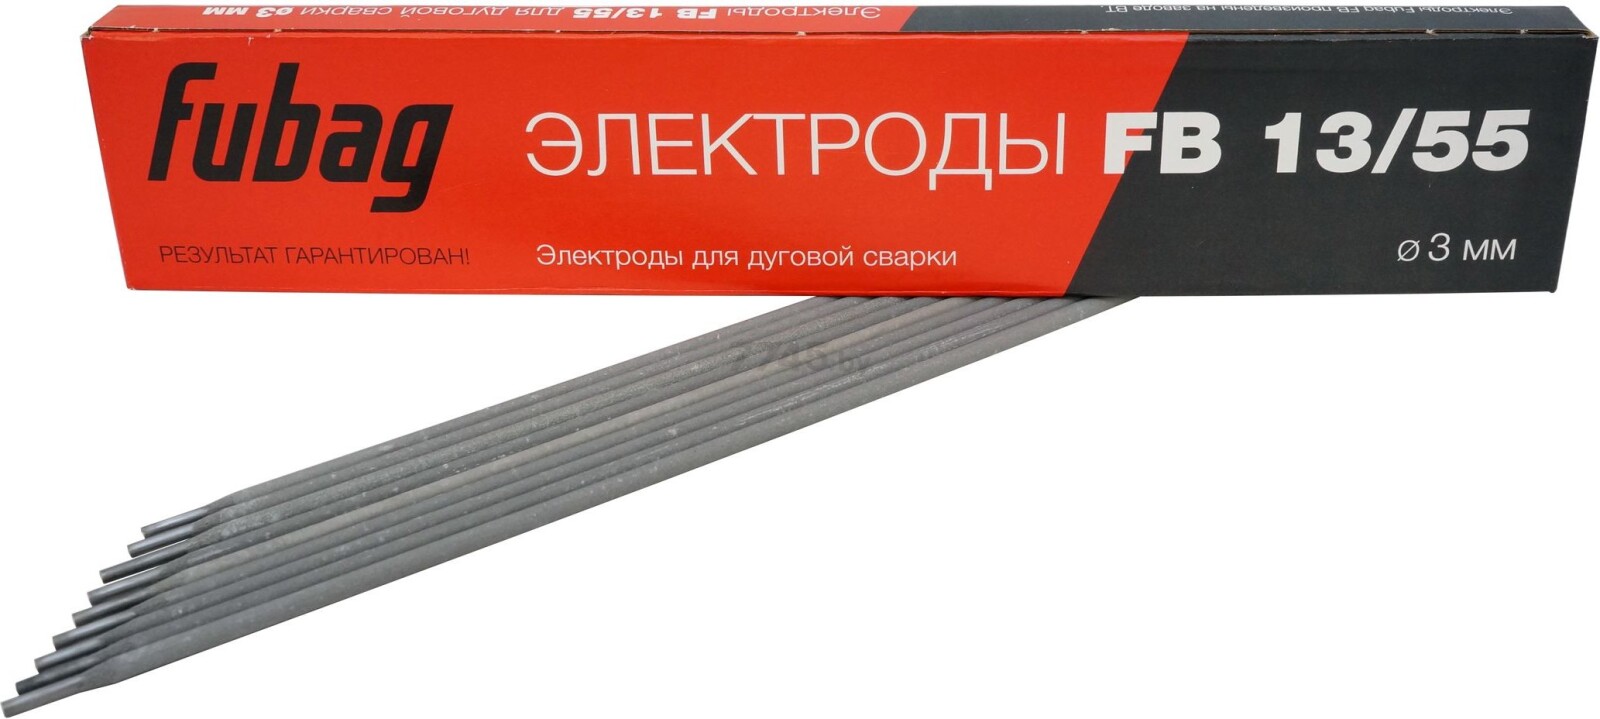 Электрод для углеродистой стали 3 мм FUBAG FB 13/55 0,9 кг (38881)